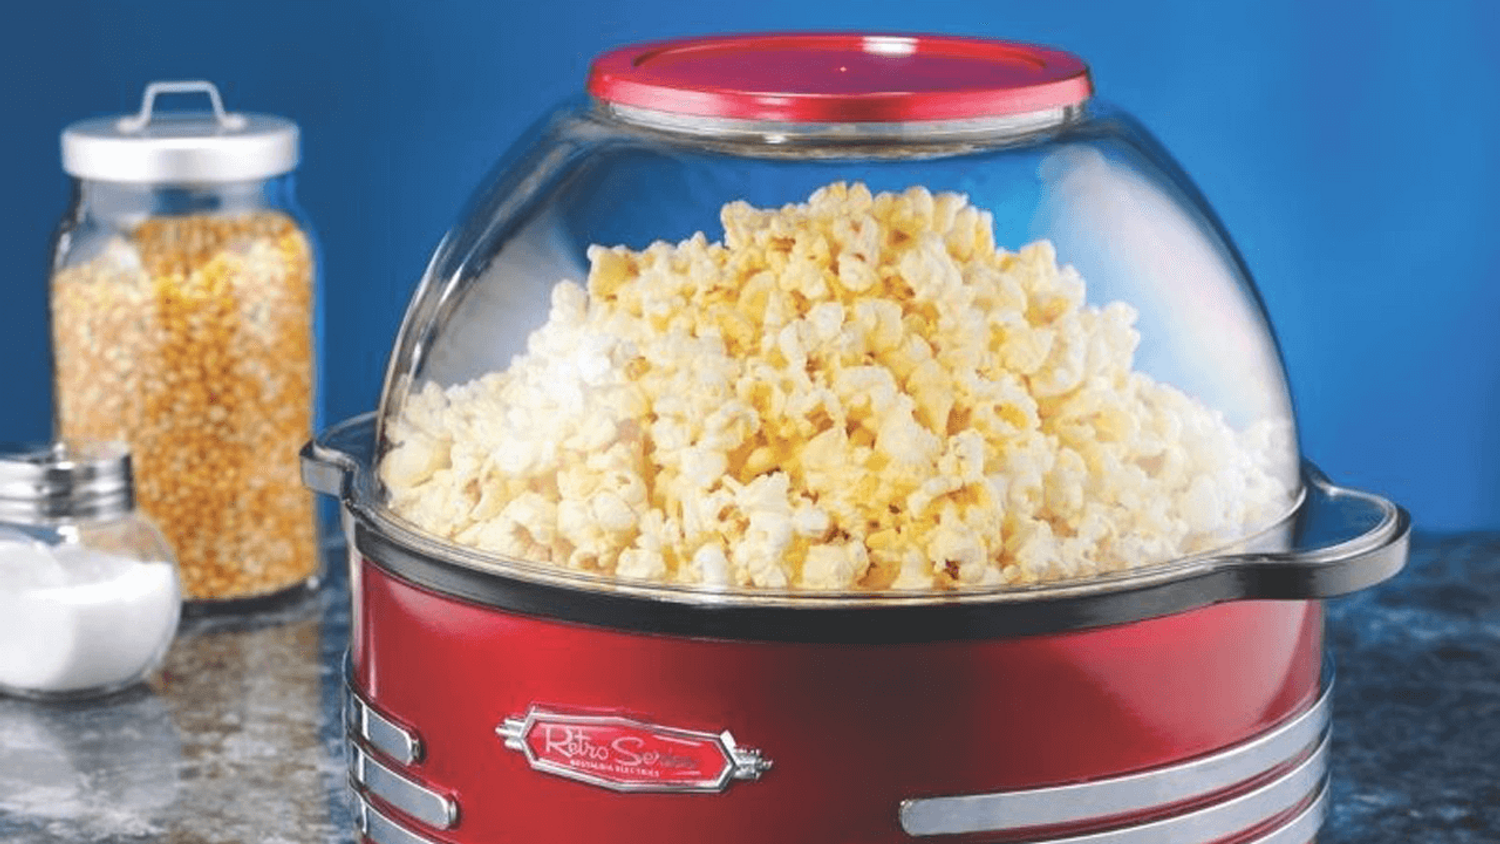 La Touche Gagnante - Gagnez votre machine à Popcorn !